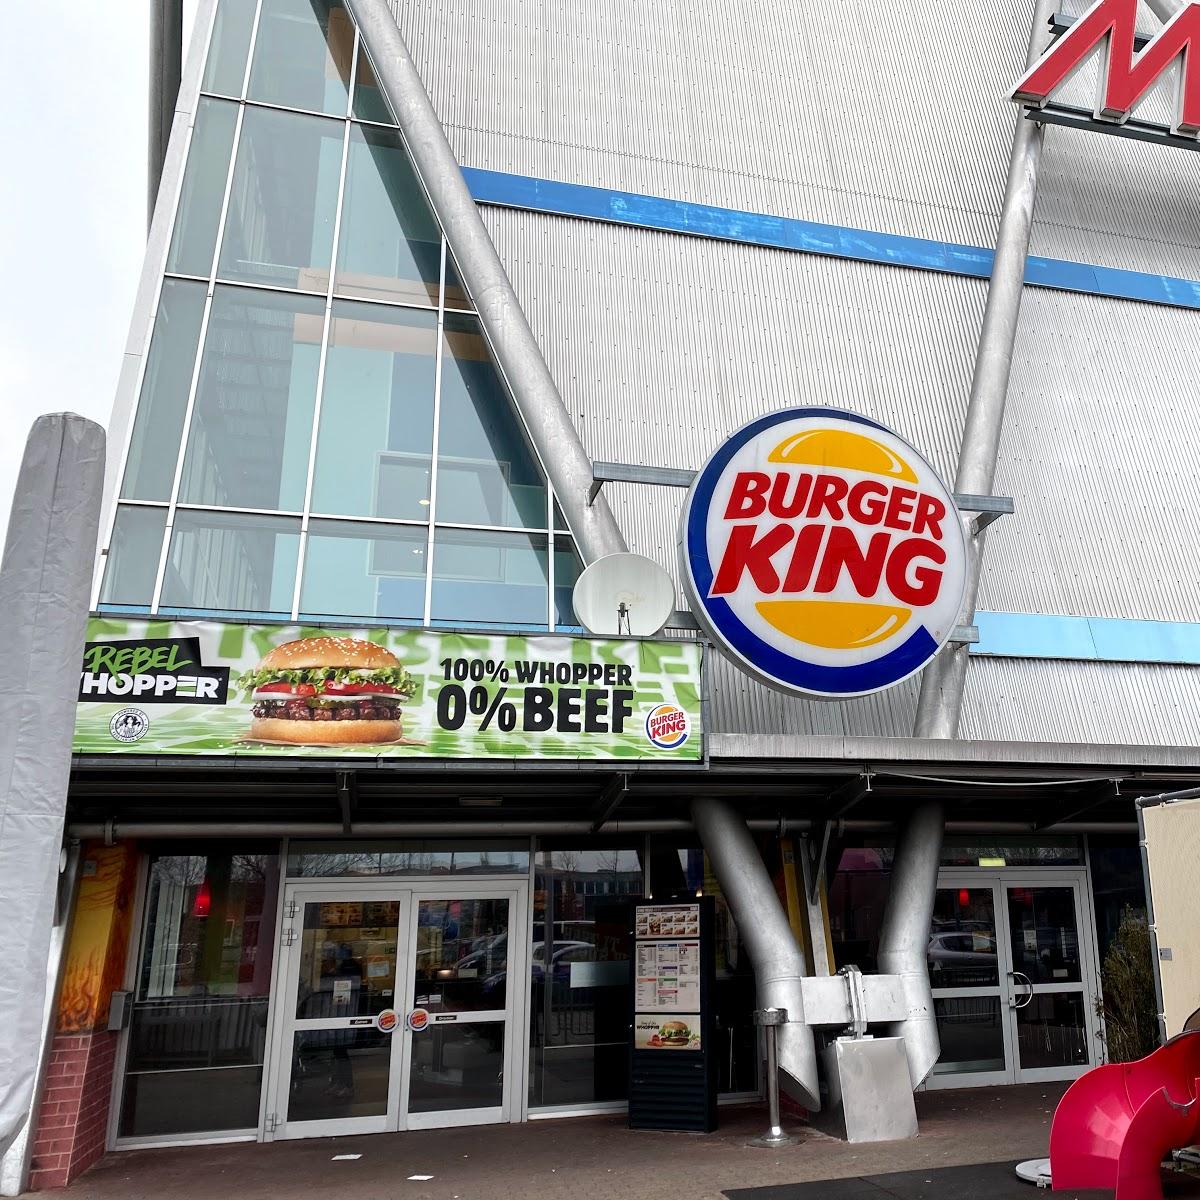 Restaurant "Burger King" in Friedrichshafen